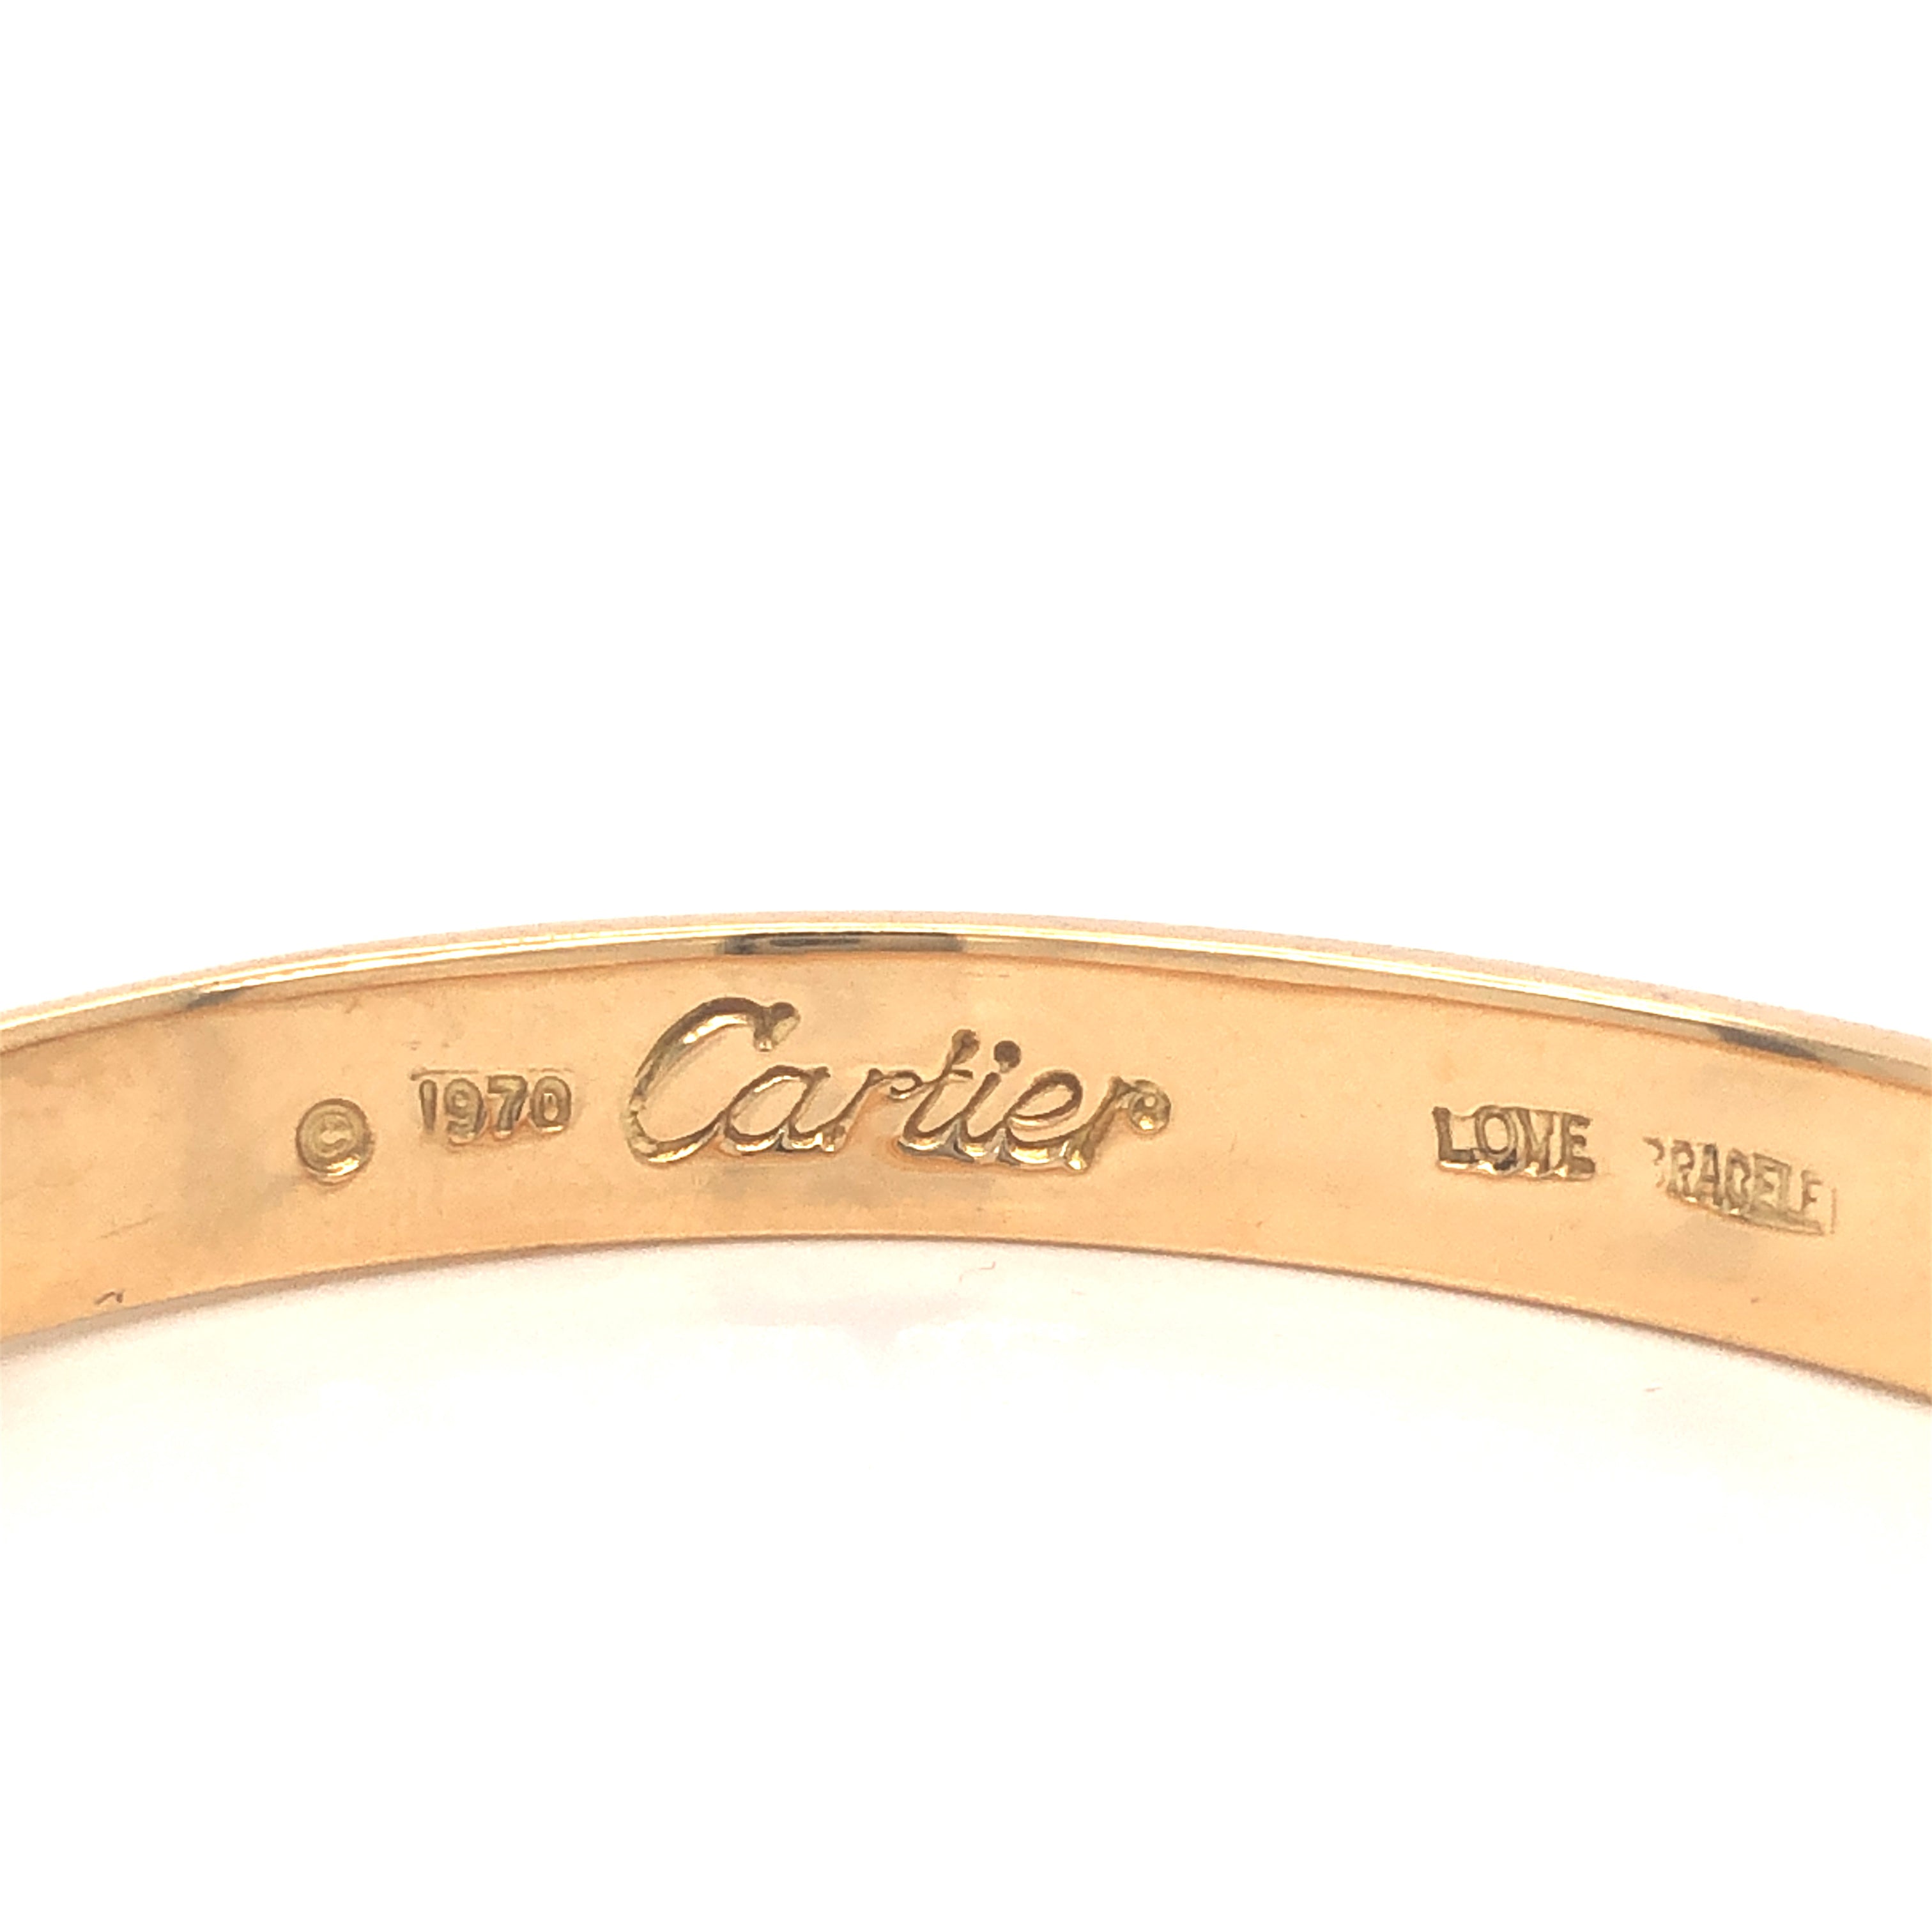 Aldo Cipullo Love Bracelet for Cartier | Vintage 18k Electroplated Bracelet